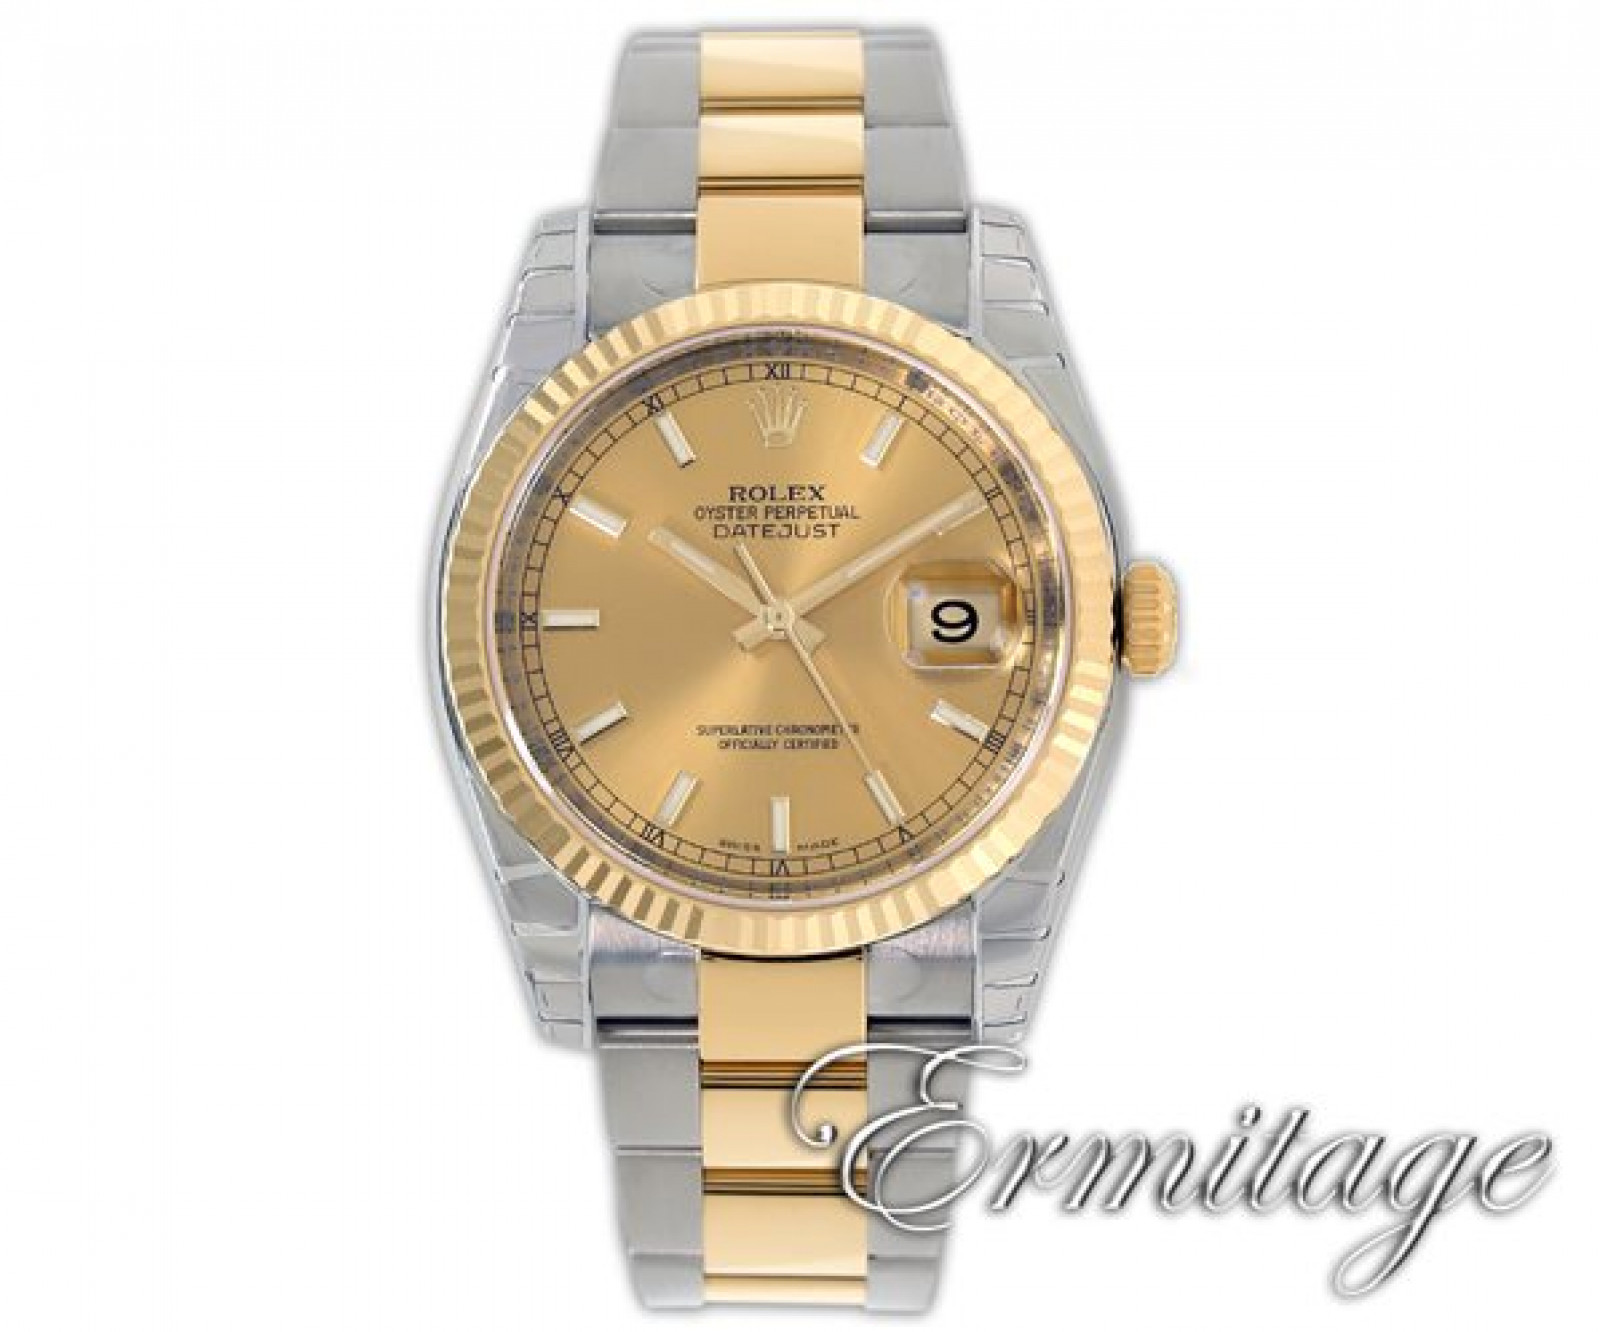 Men's Rolex Datejust 116233 with Jubilee Bracelet